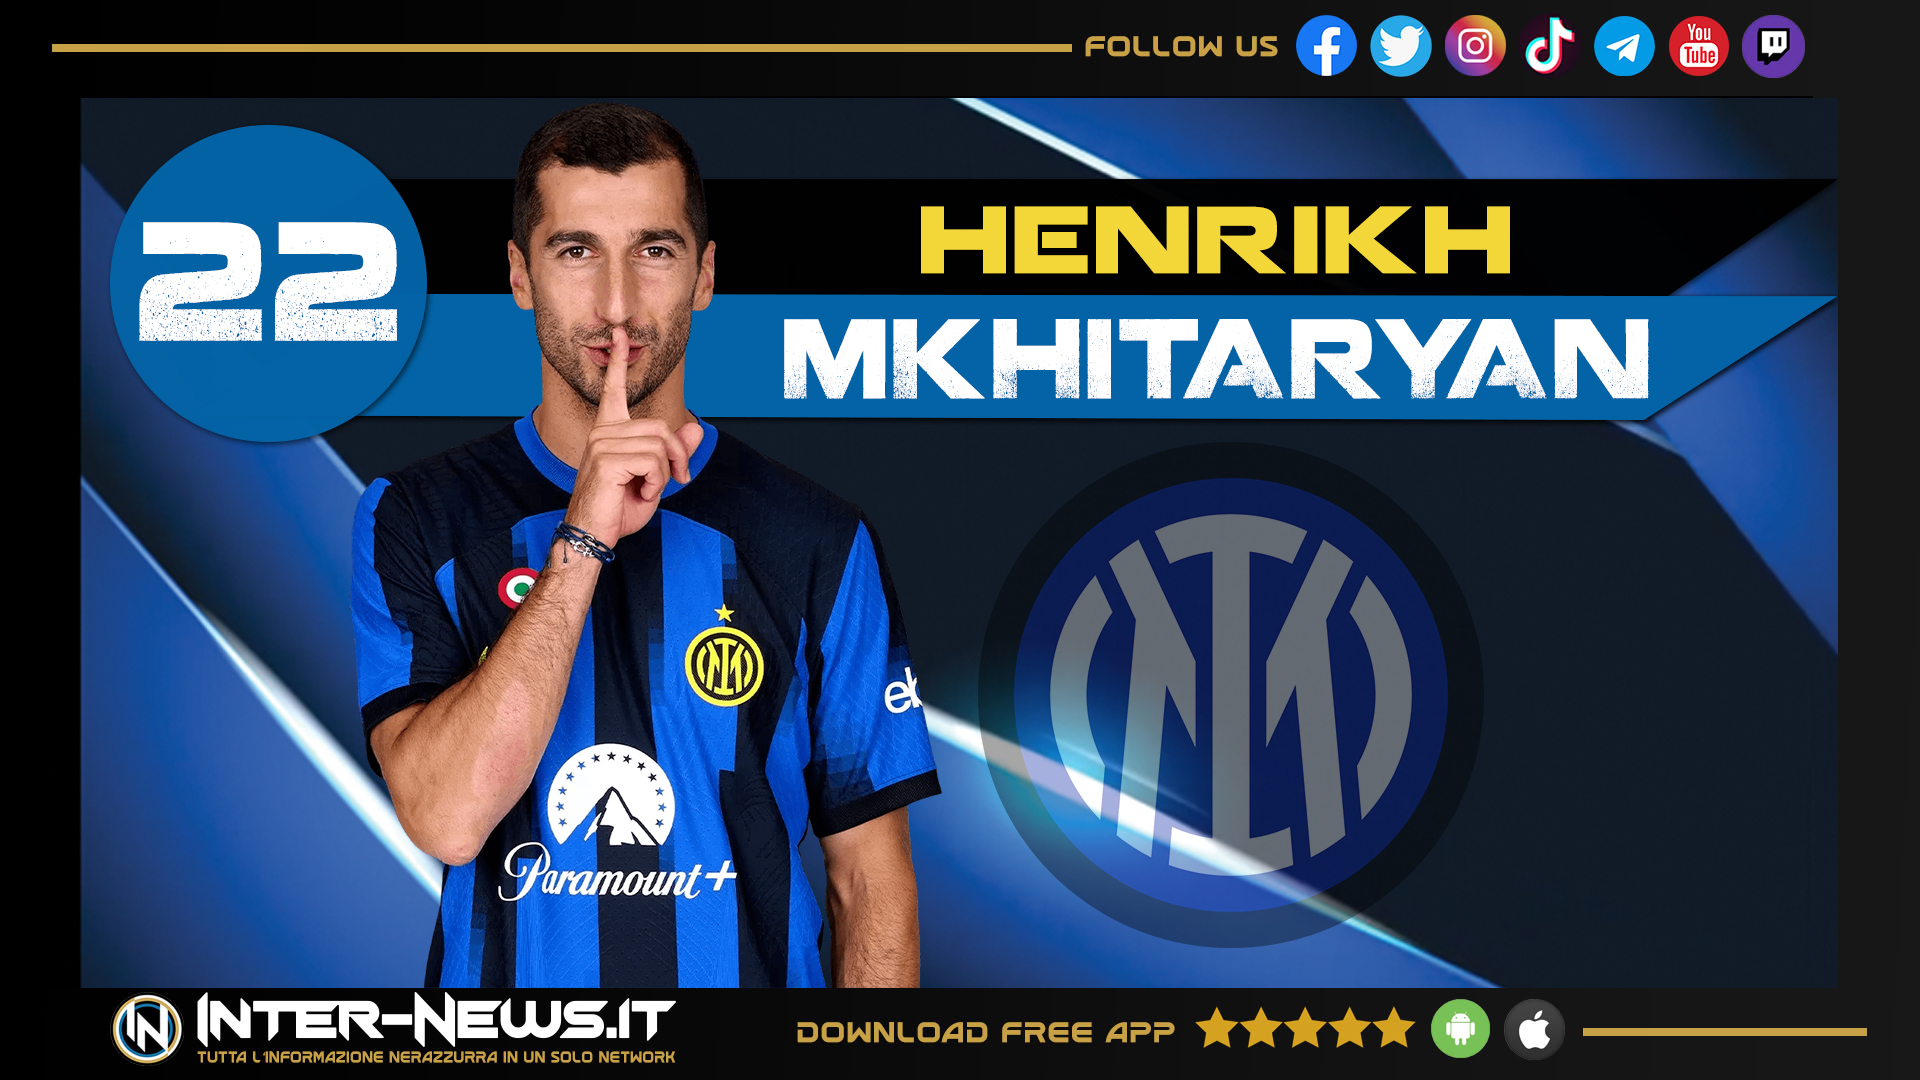 FOTO – Mkhitaryan ‘gasa’ l’Inter: le parole all’alba del giorno dopo